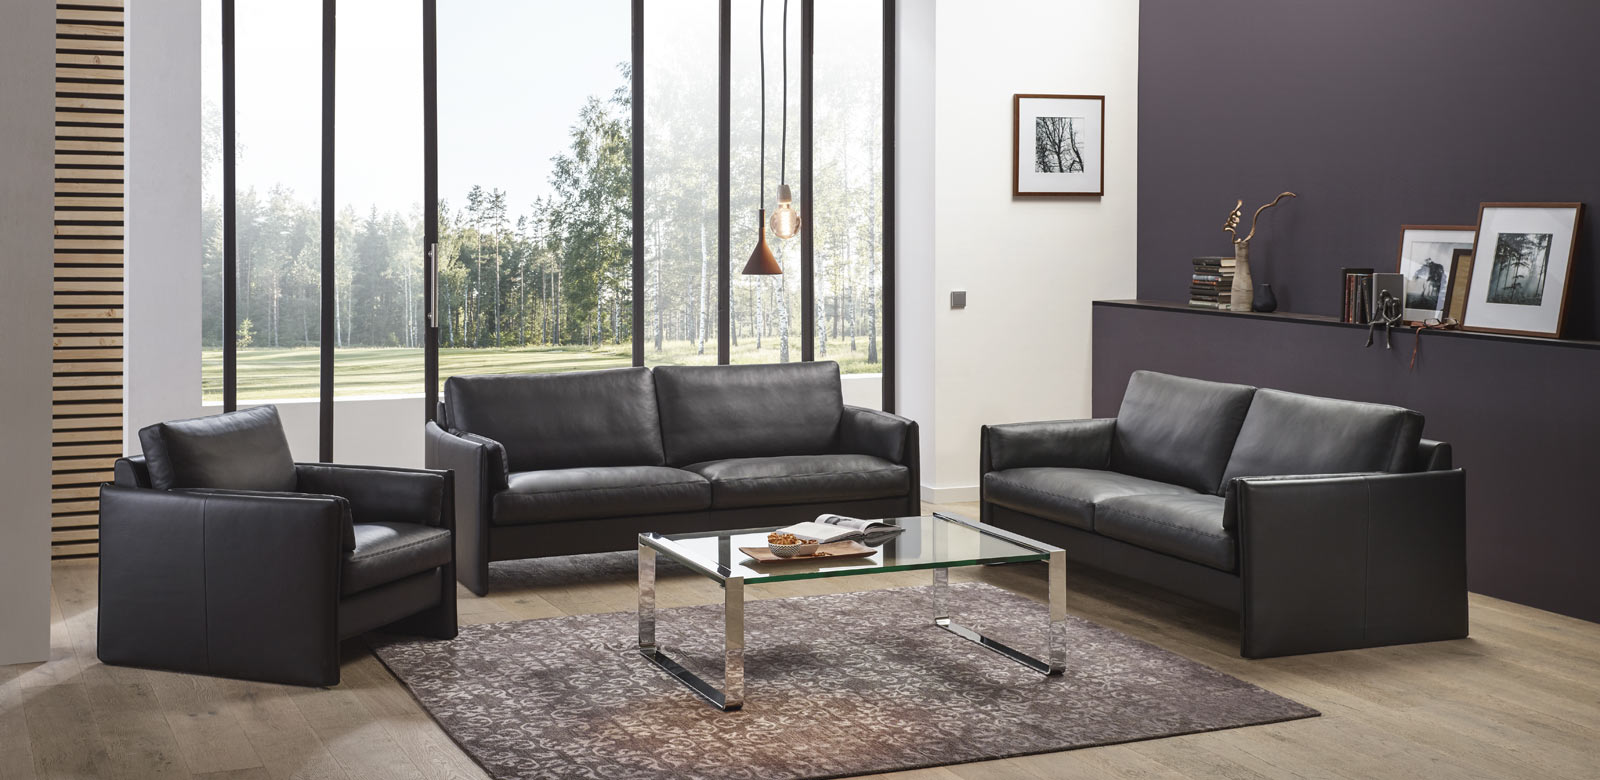 Schwarze CL810 Ledercouches mit passendem Sessel und Glastisch in modernem Wohnzimmer